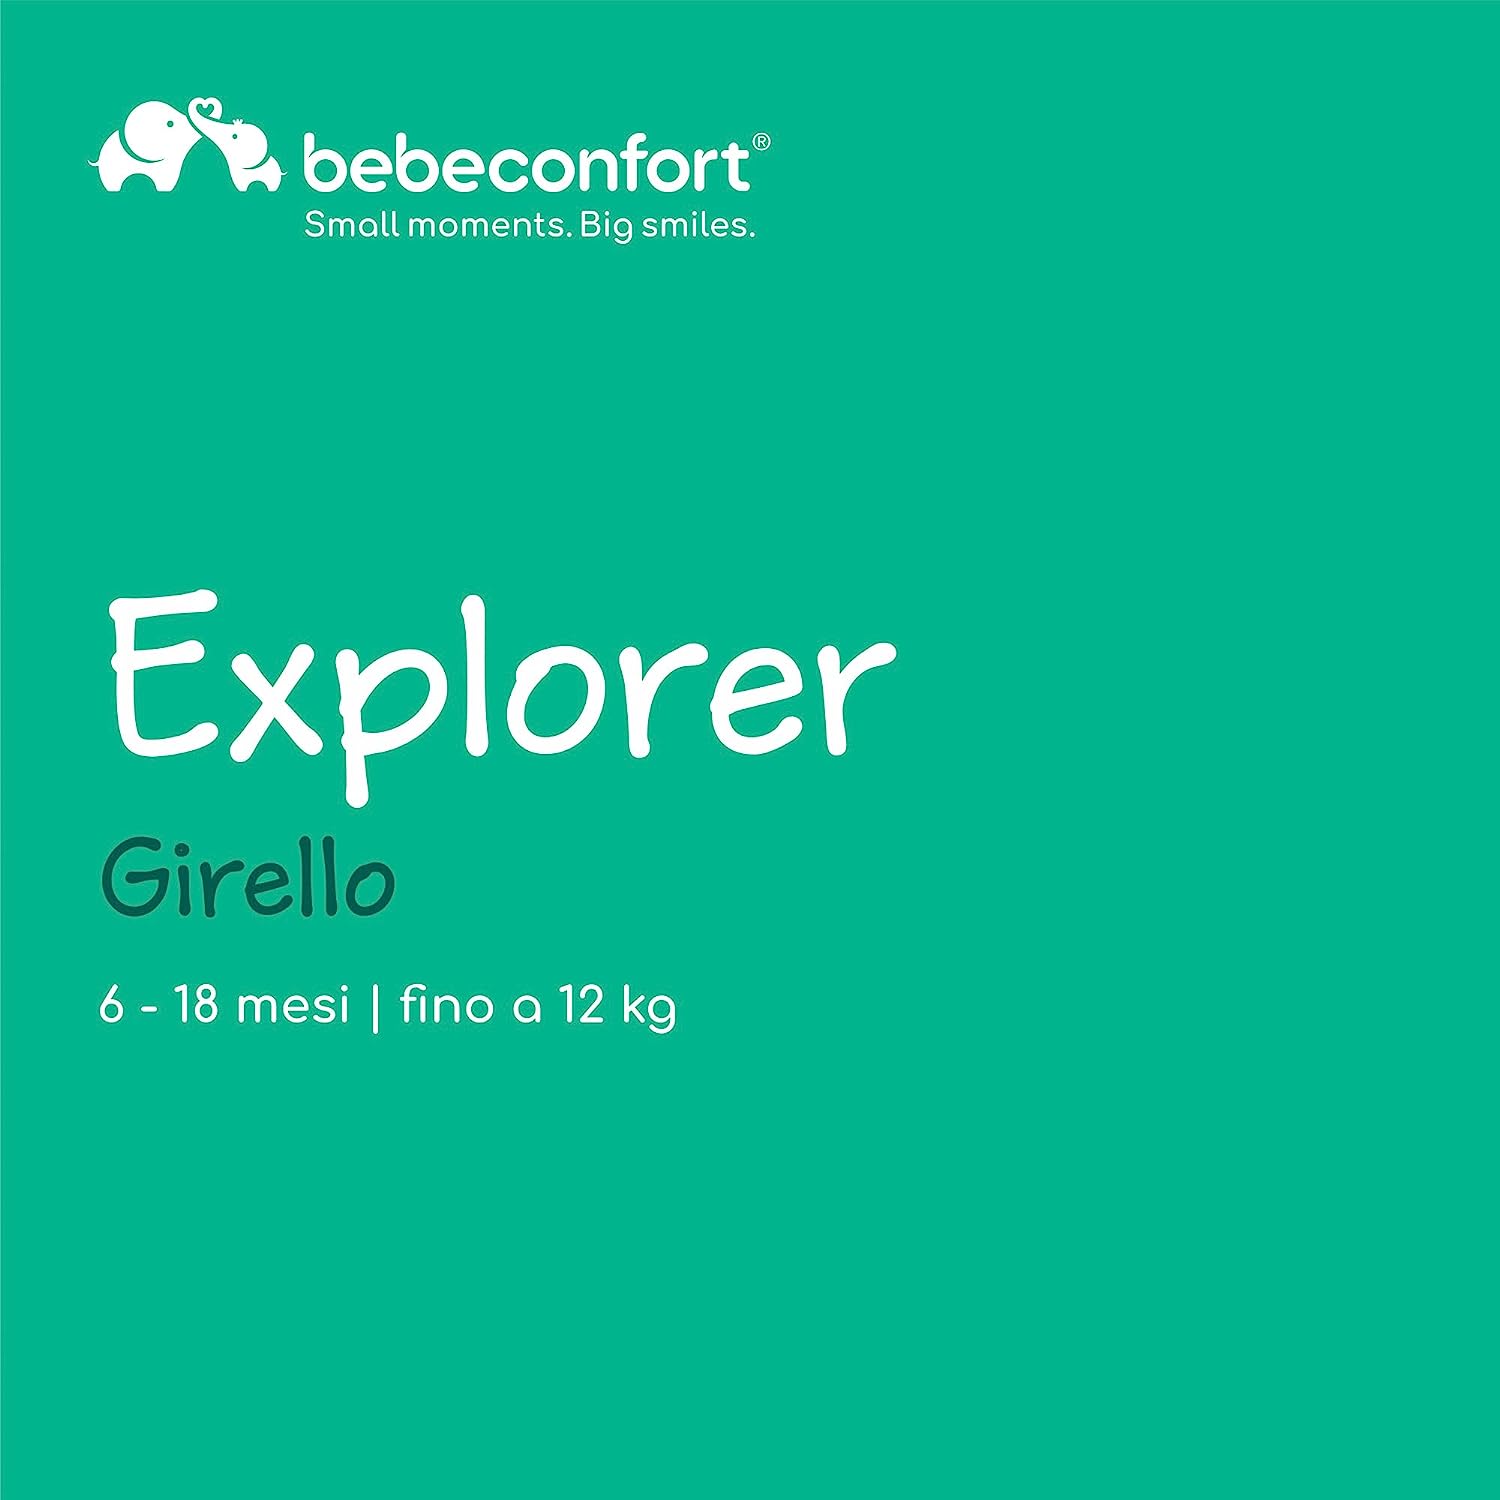 Girello Bebe Confort Explorer